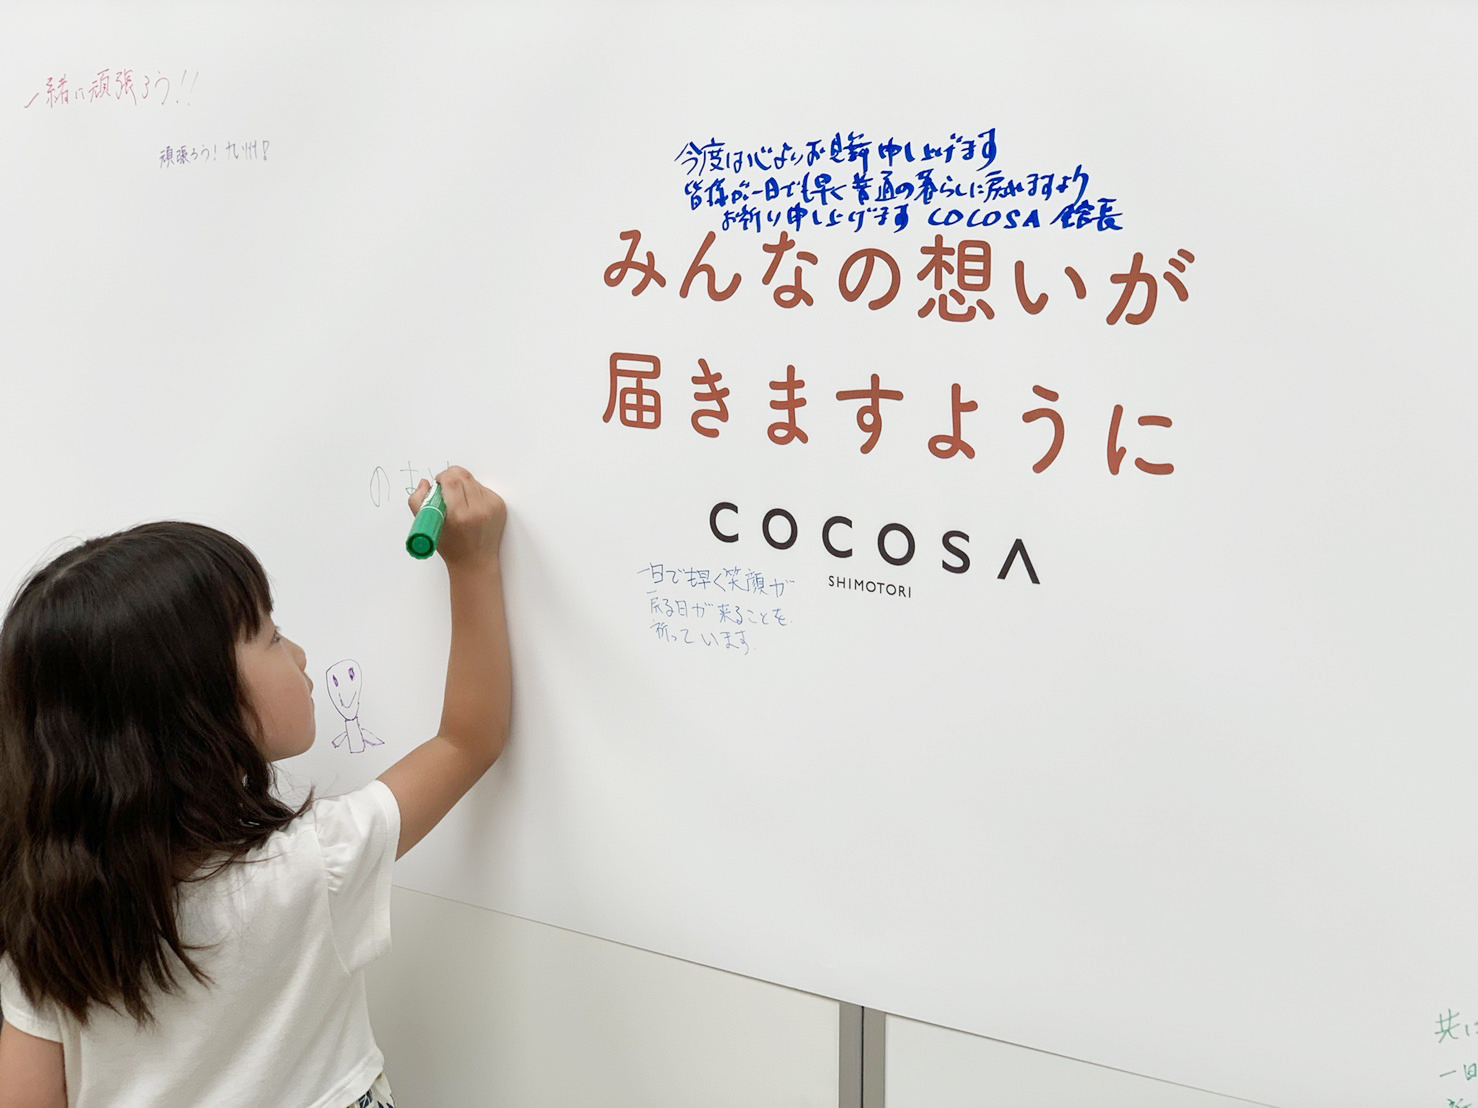 【ココスマ】COCOSA SMILE ACTION活動報告